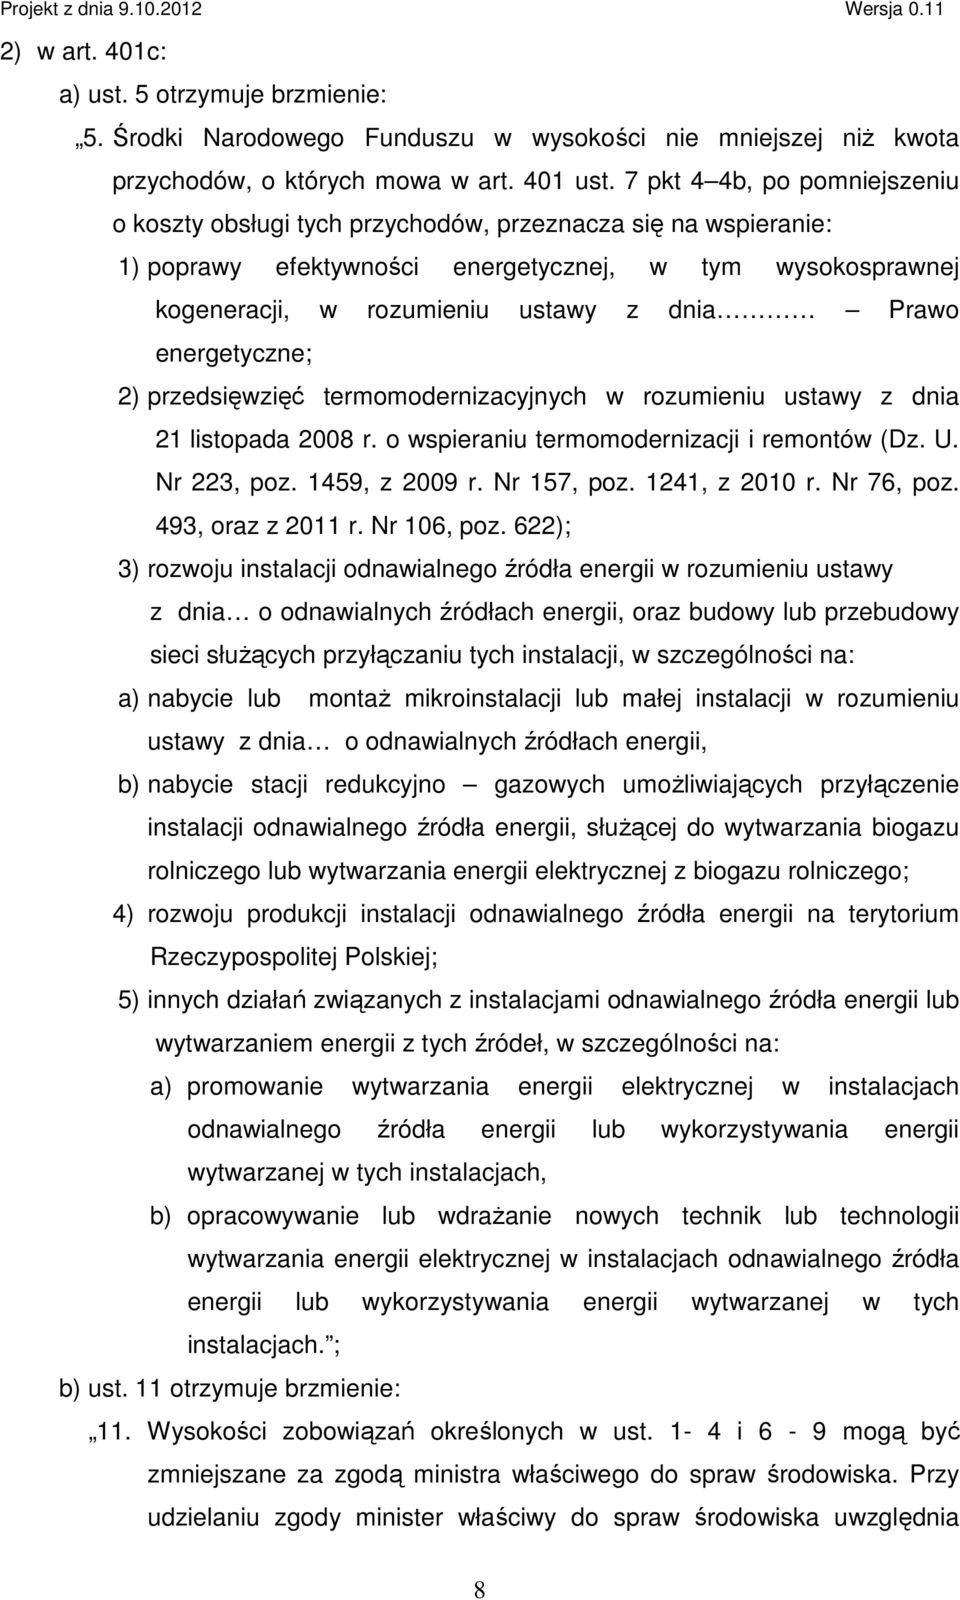 energetyczne; 2) przedsięwzięć termomodernizacyjnych w rozumieniu ustawy z dnia 21 listopada 2008 r. o wspieraniu termomodernizacji i remontów (Dz. U. Nr 223, poz. 1459, z 2009 r. Nr 157, poz.